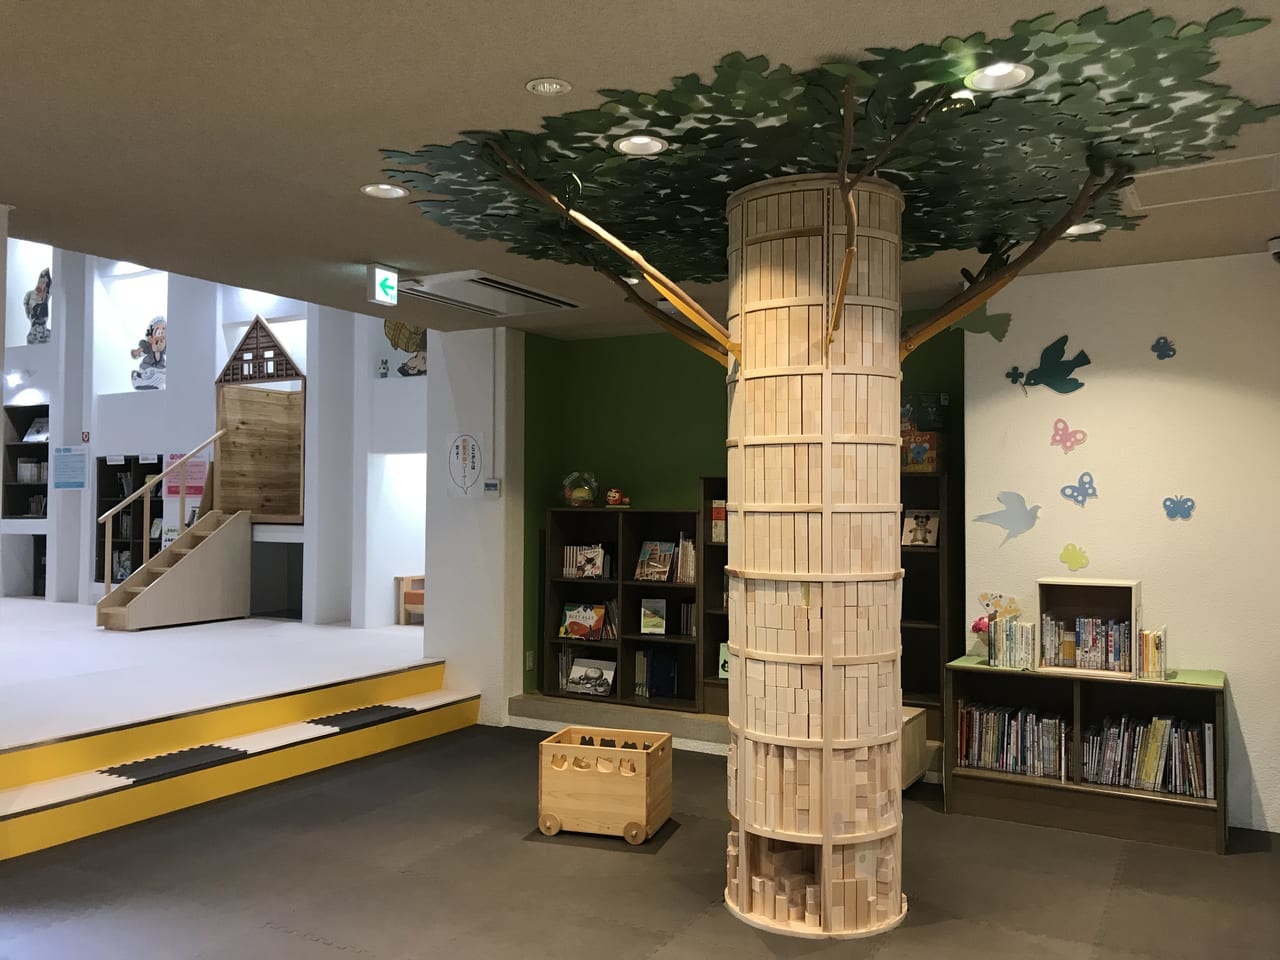 2021年6月、高知県立文学館内「こどものぶんがく室」は積み木ツリーや絵本もある秘密基地のような場所。しかも無料で利用できる。